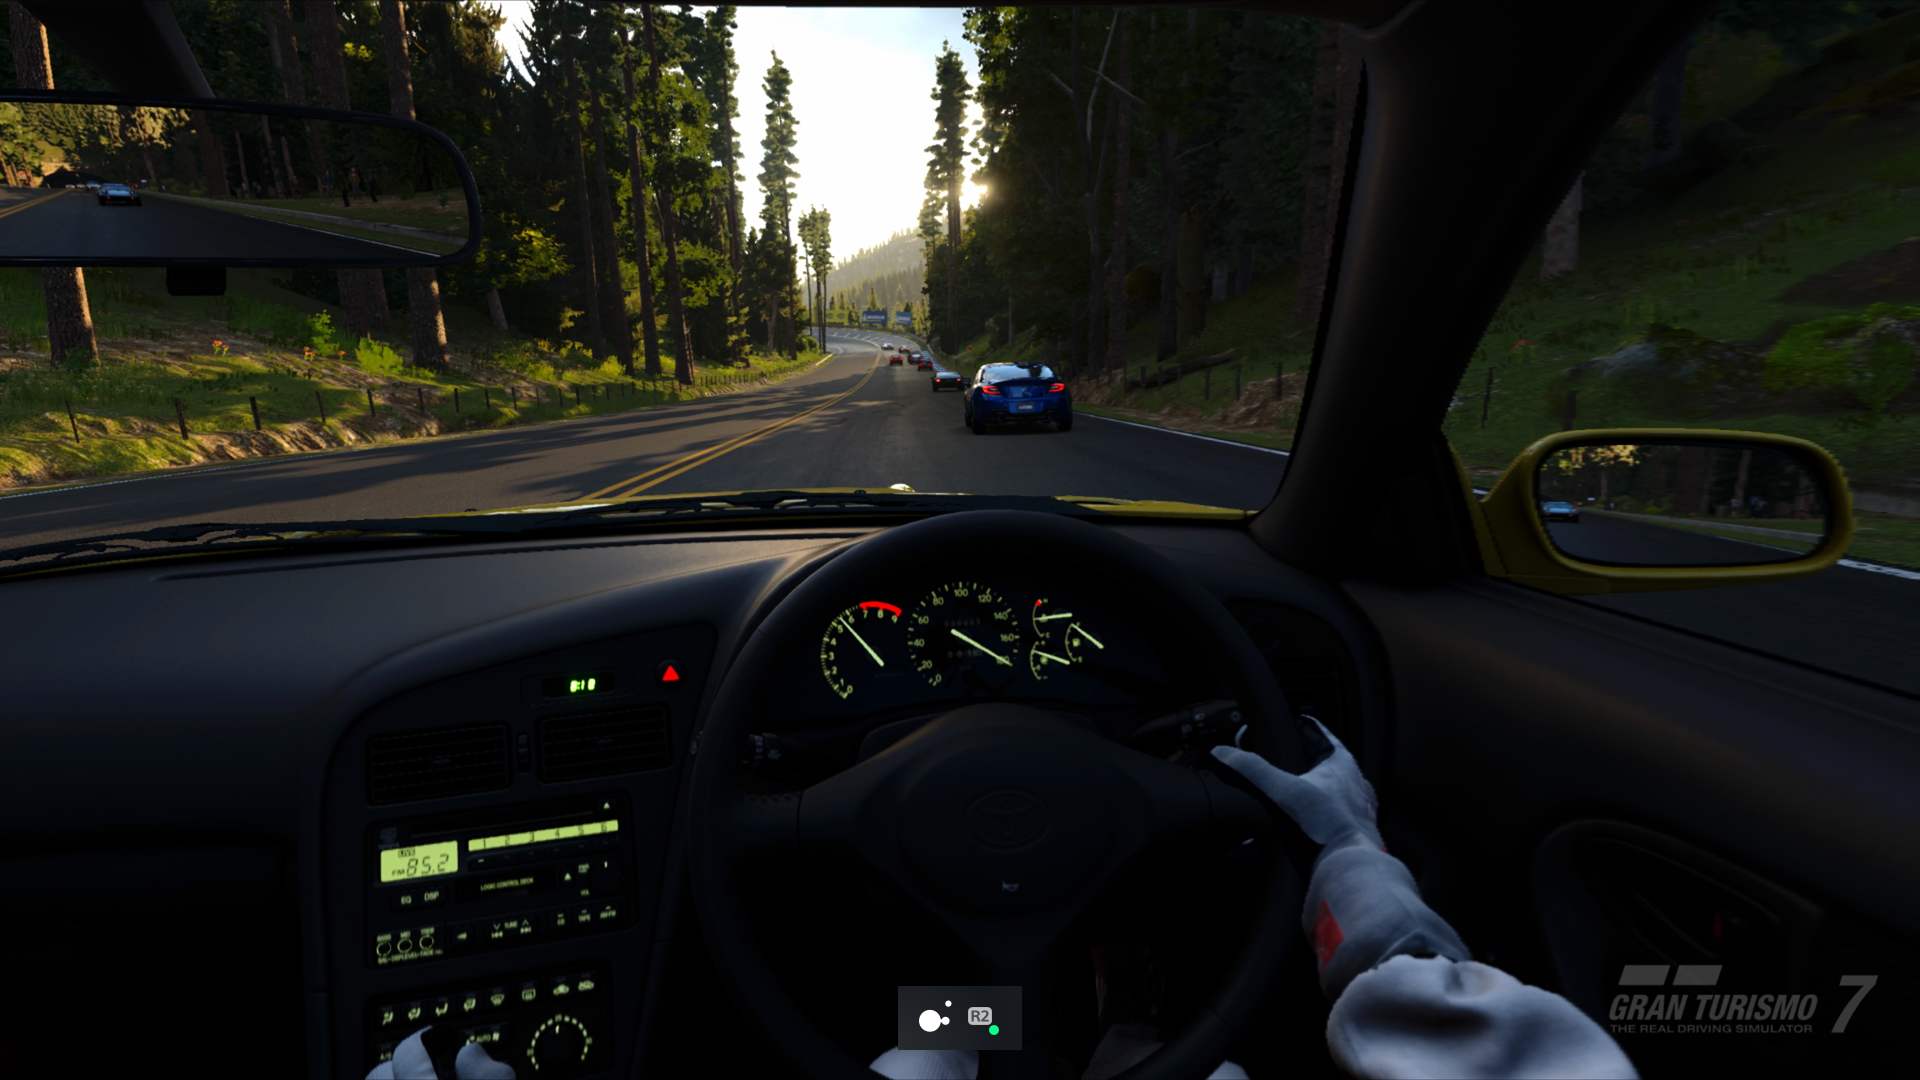  "Captura de pantalla de Gran Turismo 7 para PS5 en la que se muestra el modo de alternancia activado para el botón "R2" del mando Access"